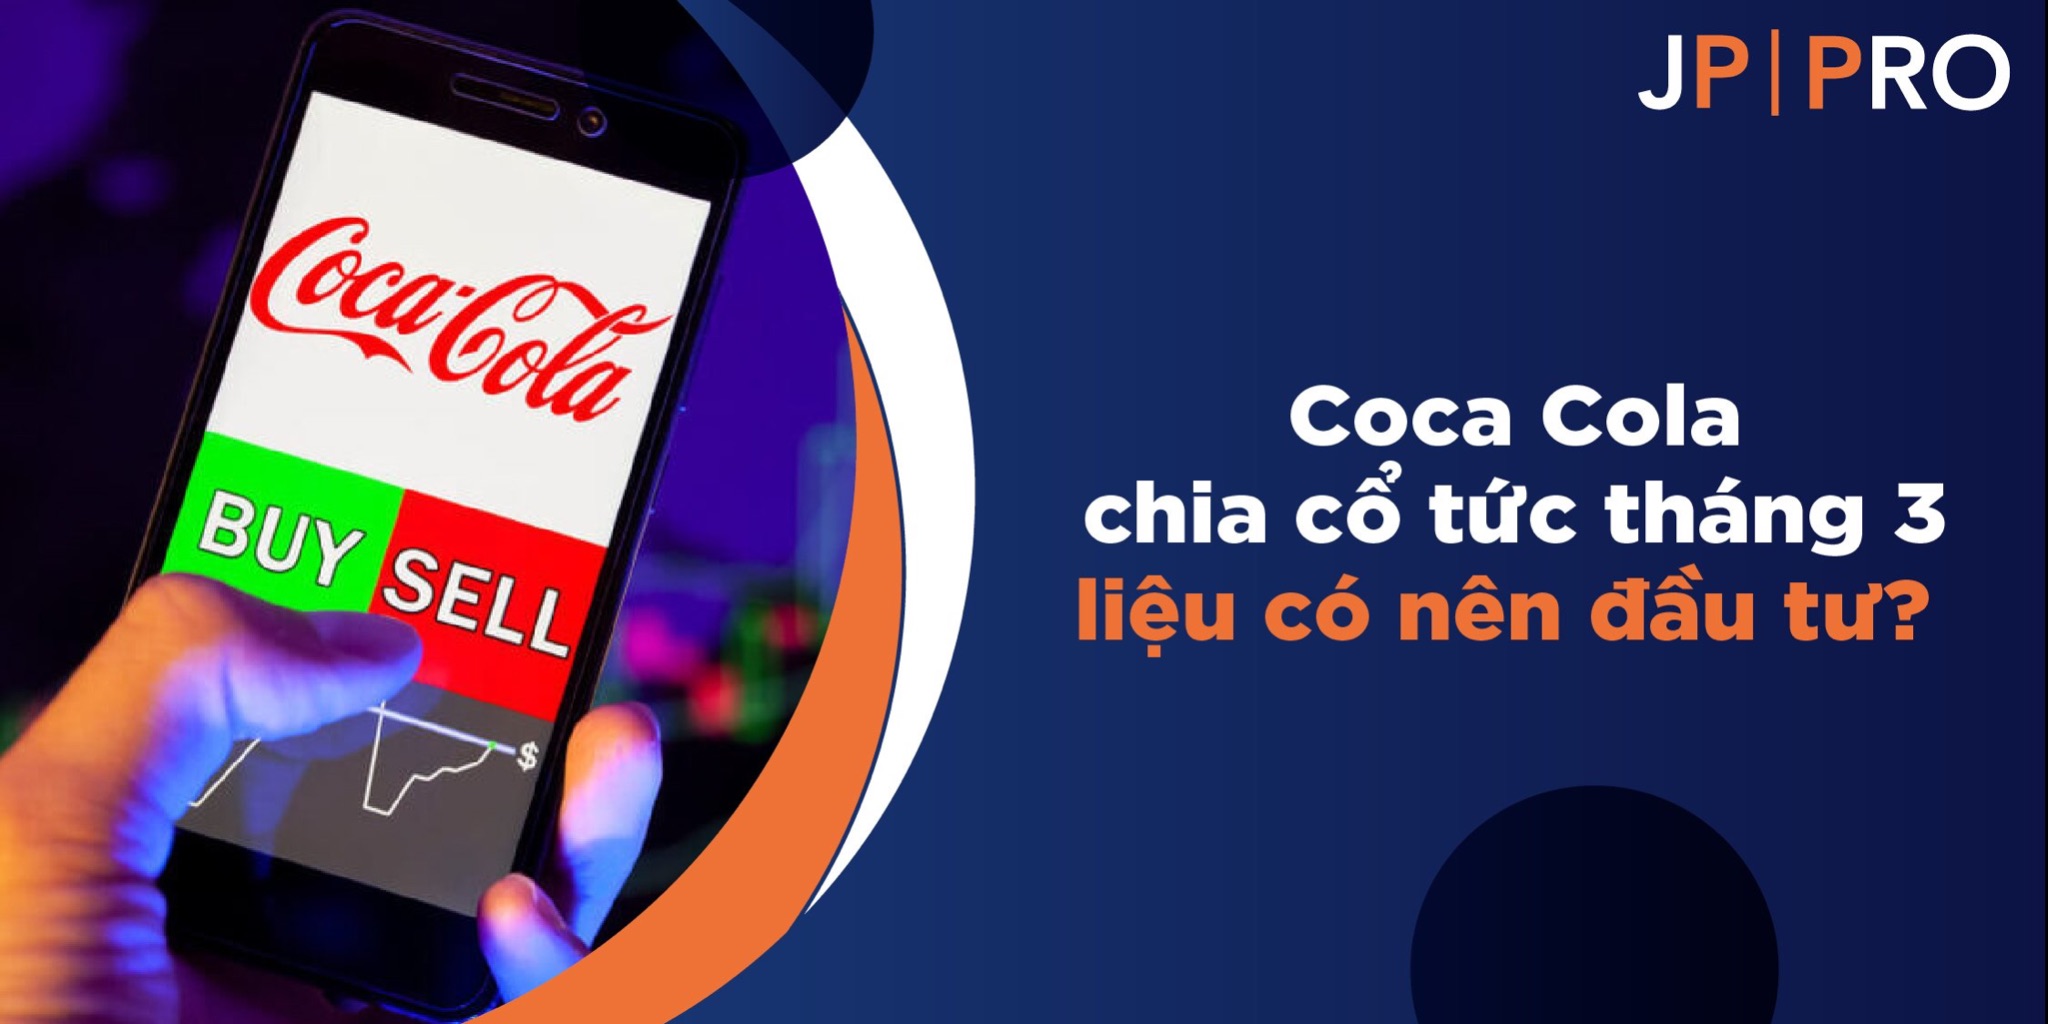 Sàn JP Pro: Coca Cola chia cổ tức tháng 3 liệu có nên đầu tư?